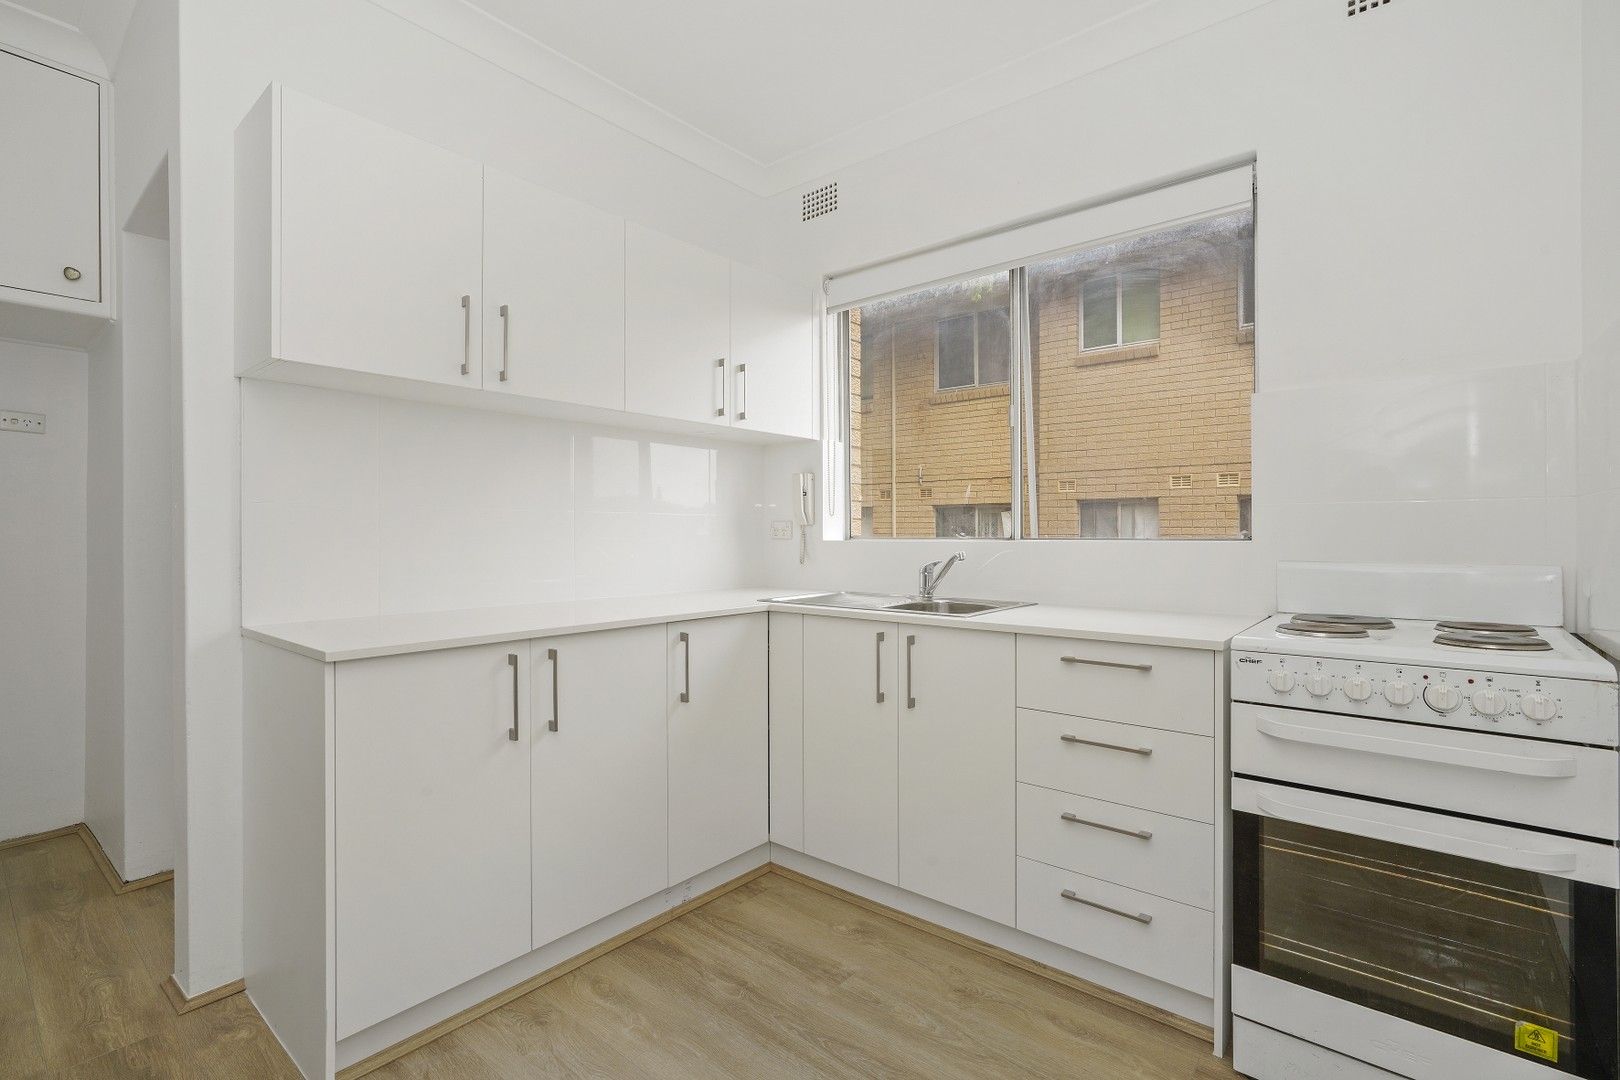 2 bedrooms Apartment / Unit / Flat in 9/97 Alt Street ASHFIELD NSW, 2131